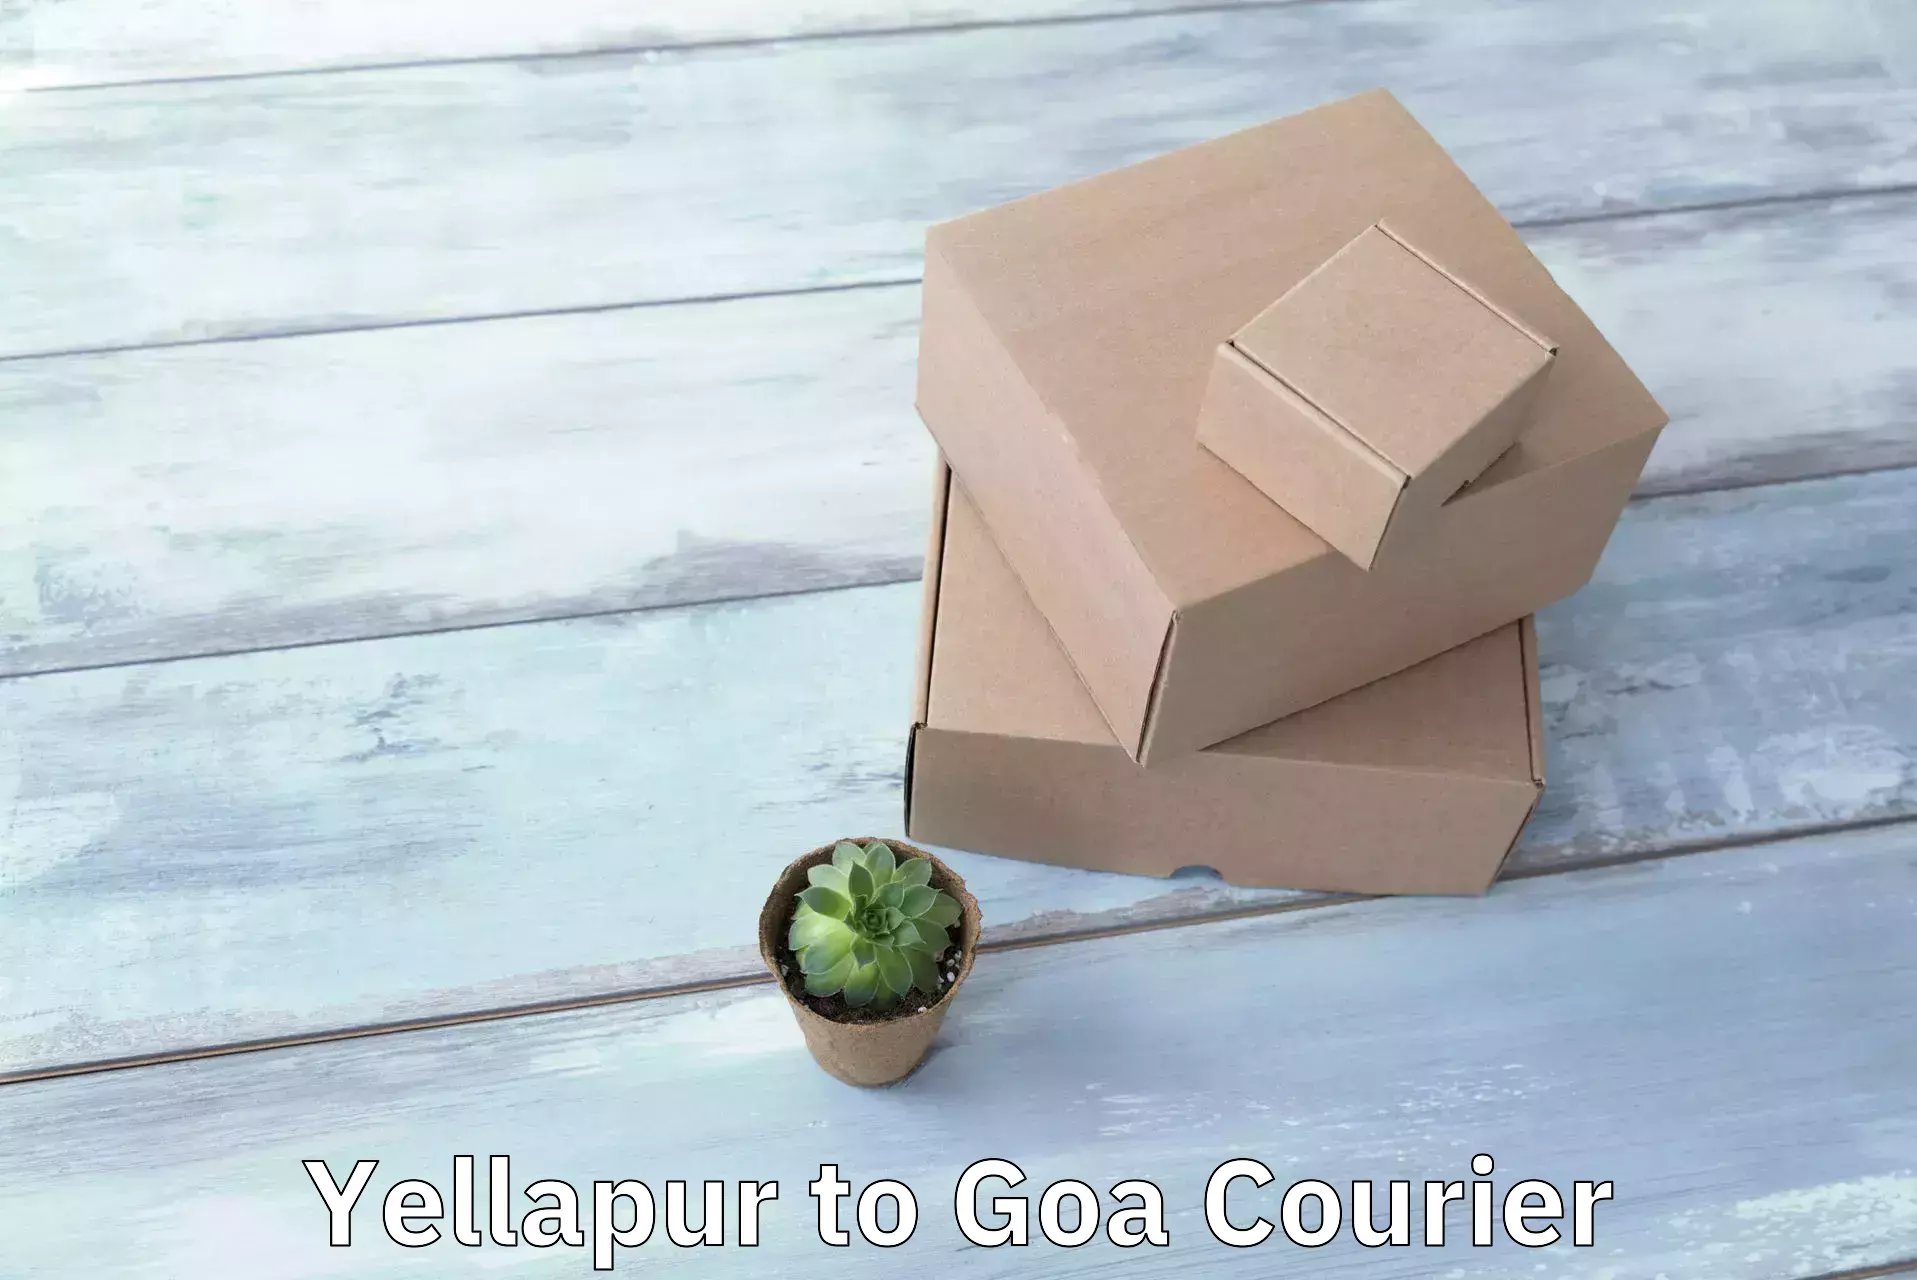 Reliable courier service Yellapur to Panjim